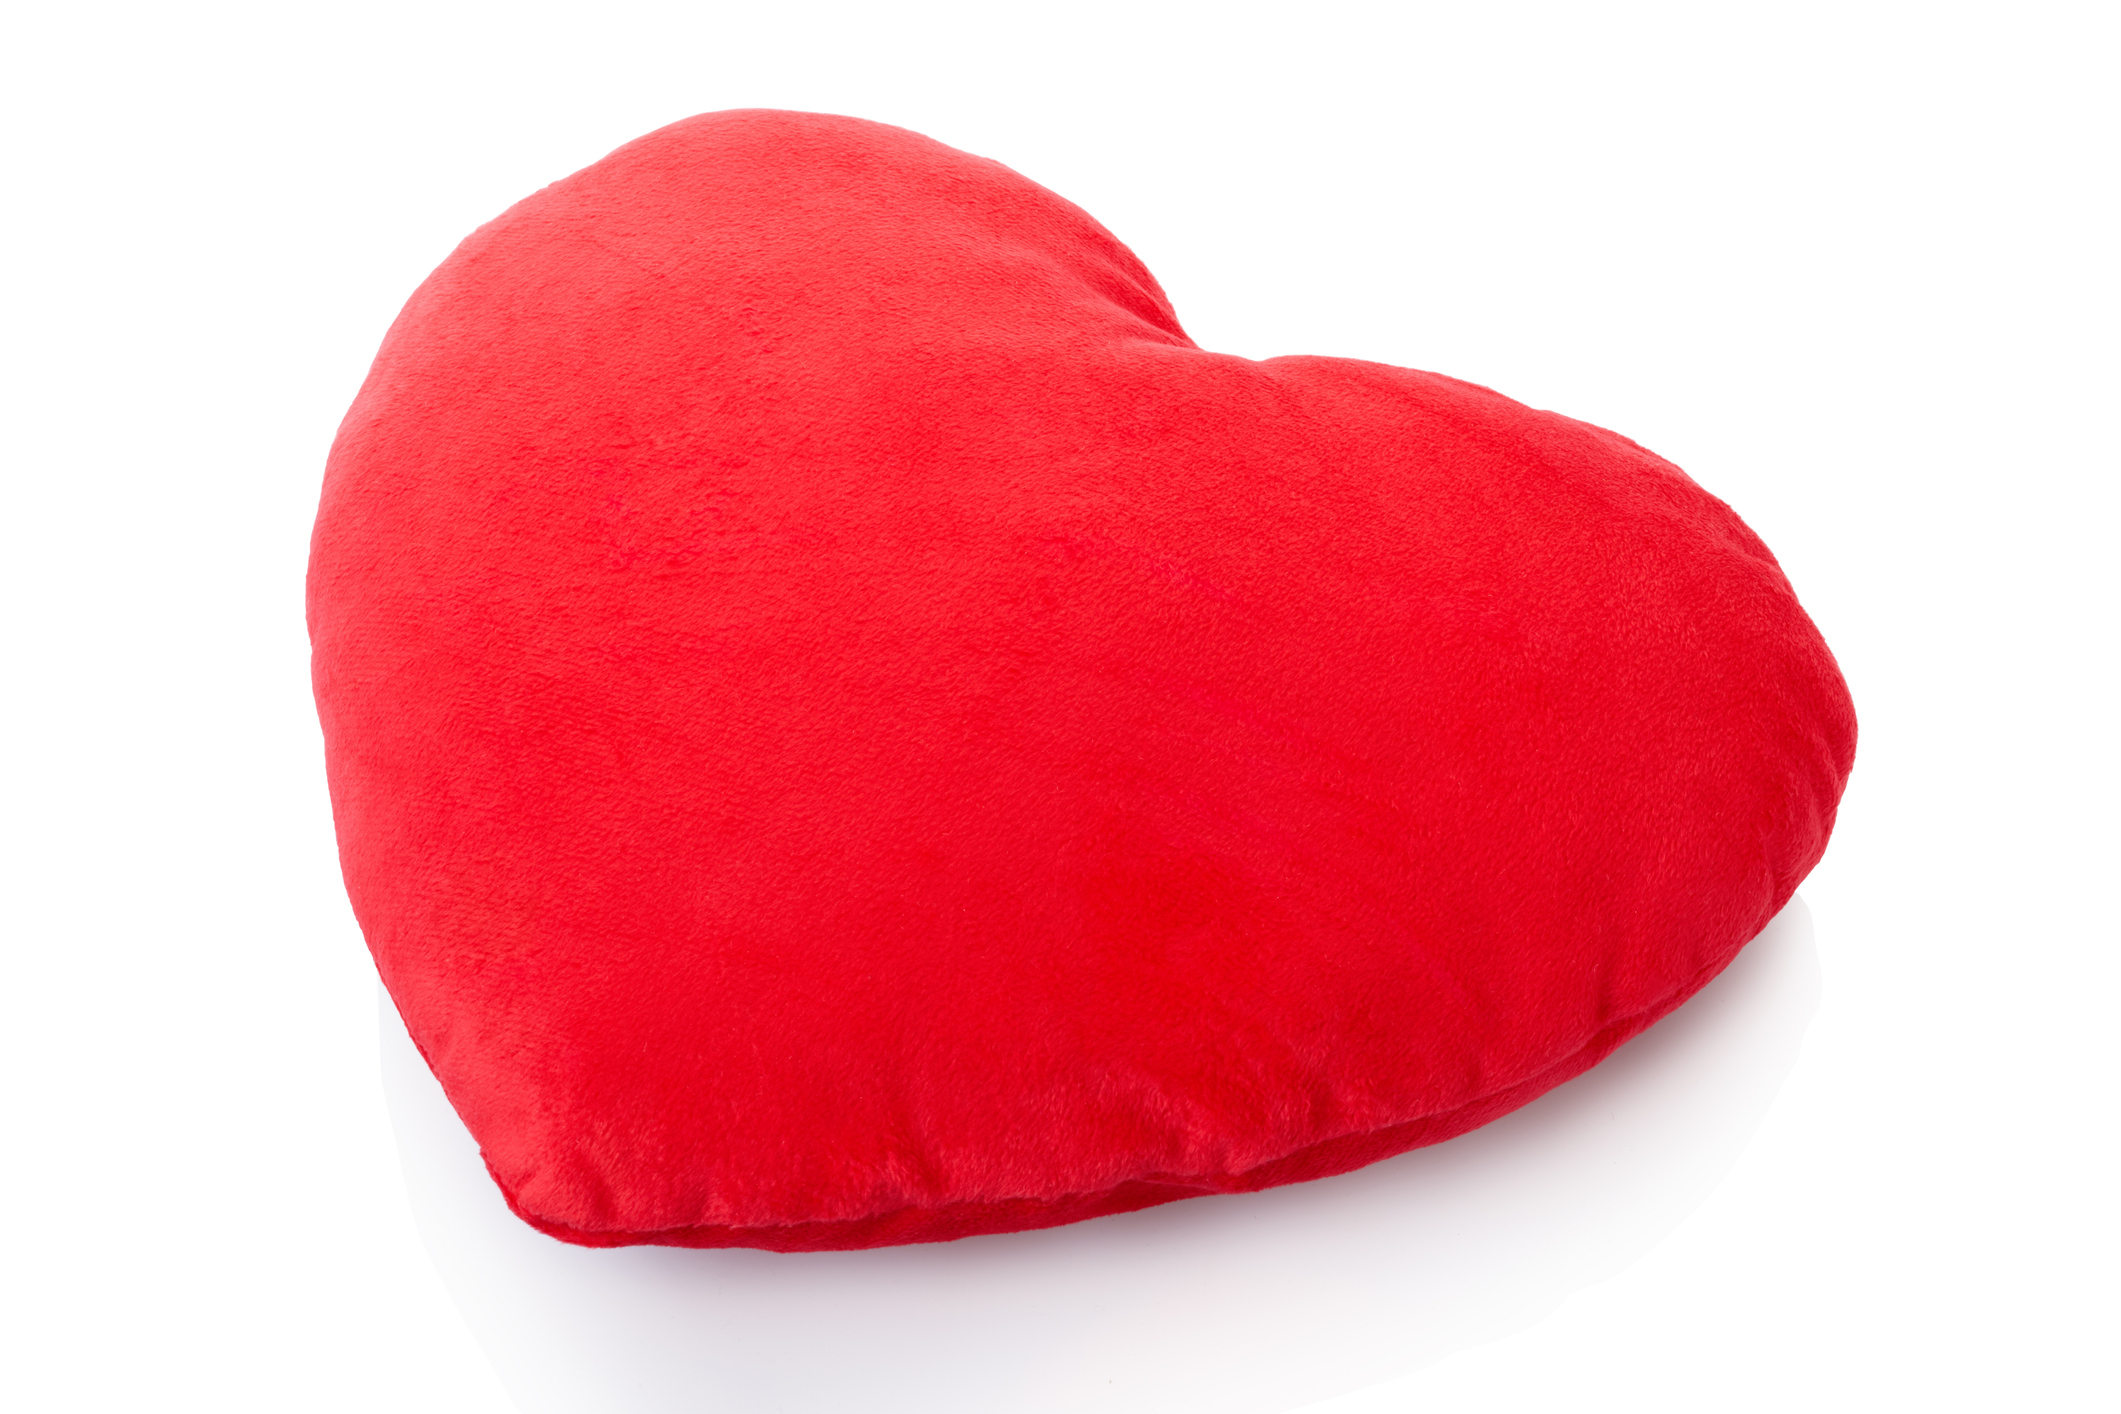 A heart-shaped pillow